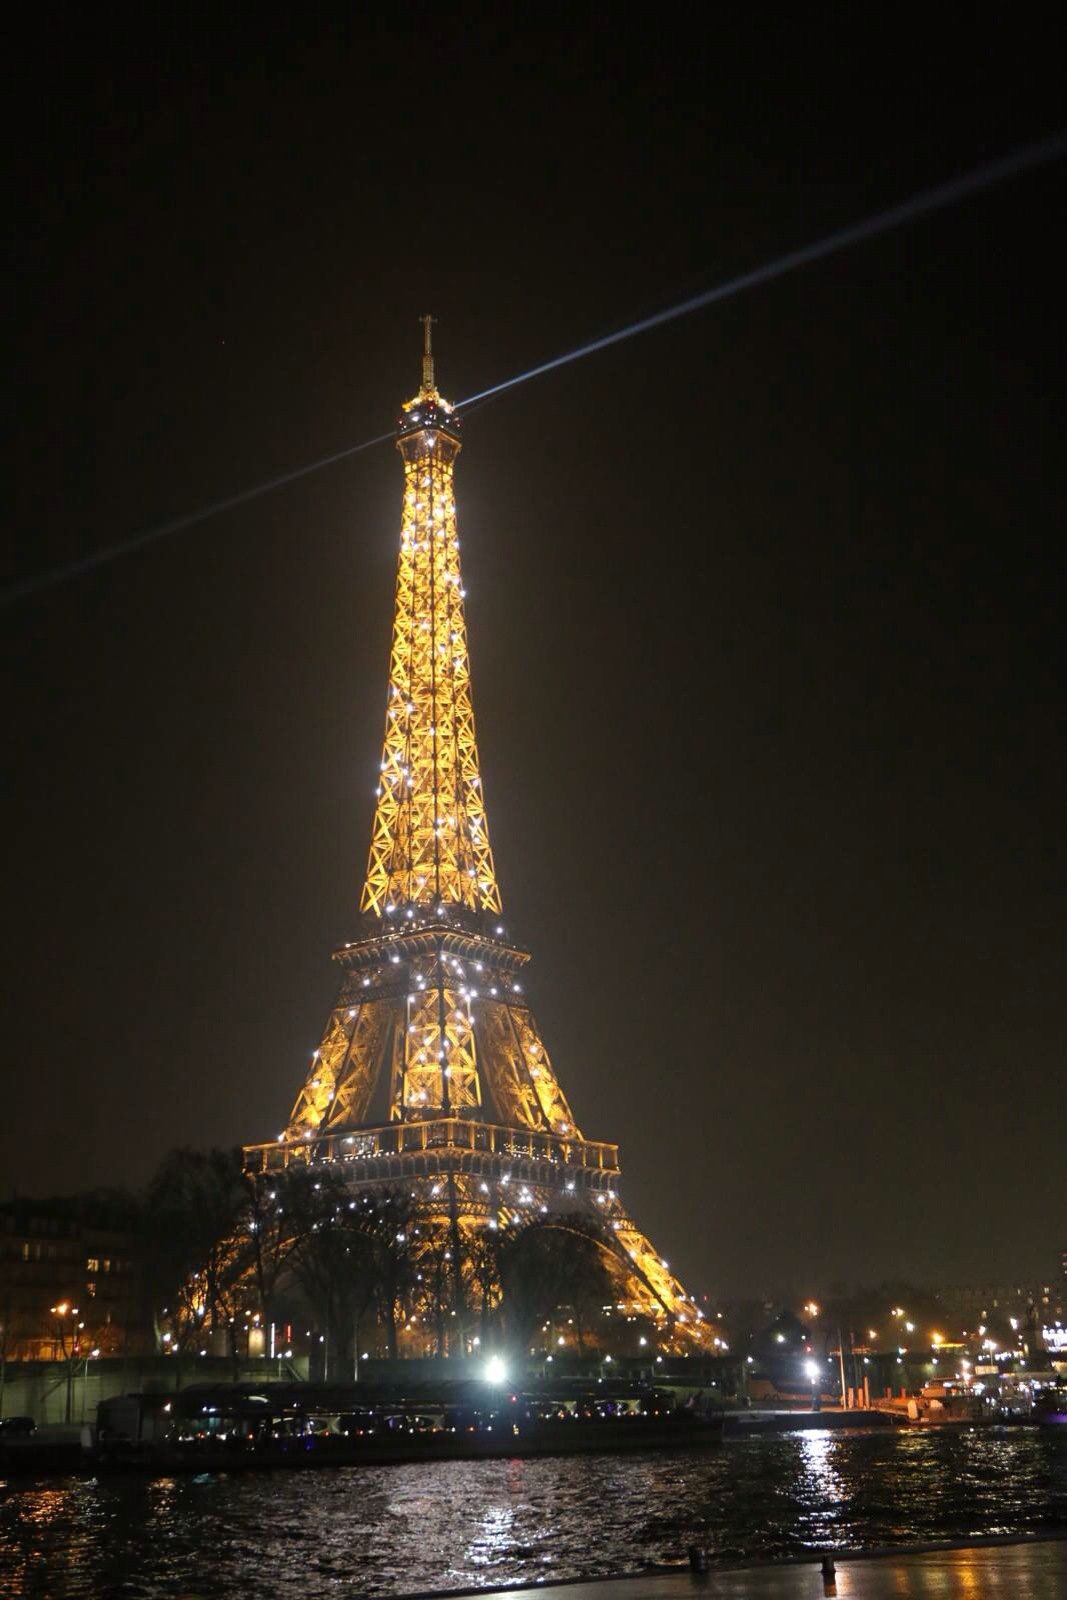 塞纳河畔,铁塔夜景,五色斑斓,夜巴黎的美淋漓尽致,整点时刻的灯光尤为